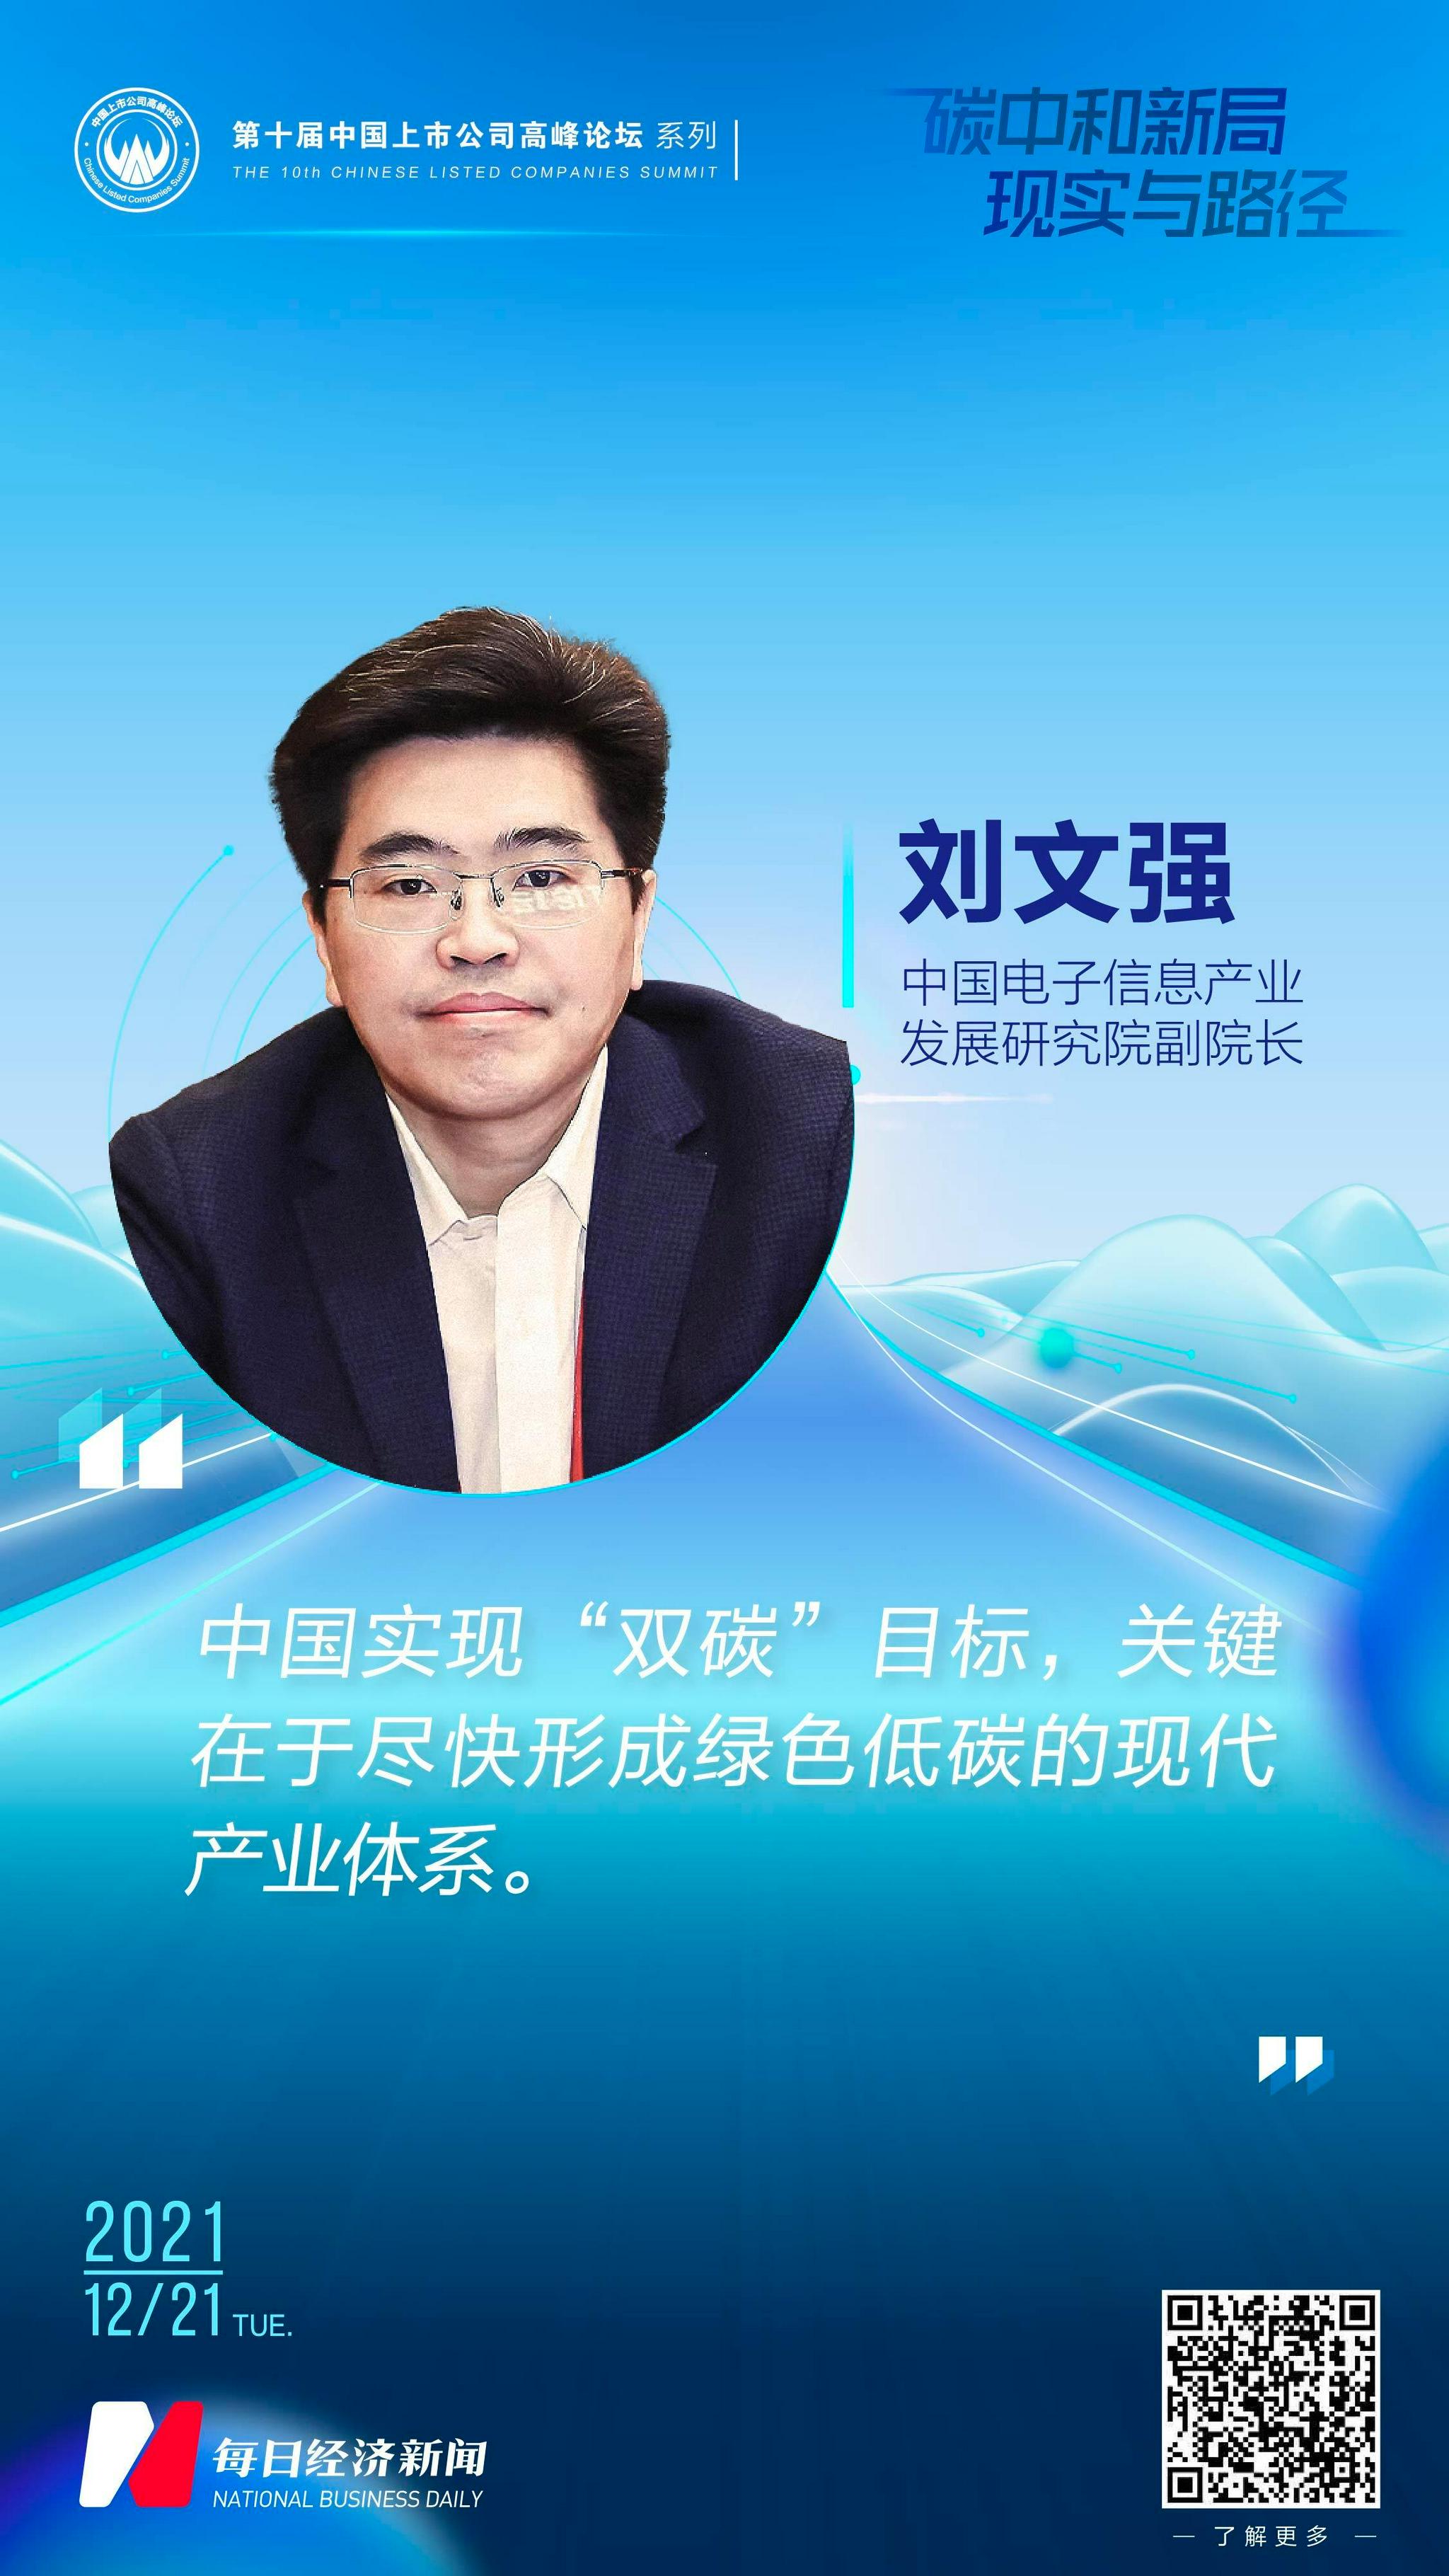 中国电子信息产业发展研究院副院长刘文强:实现"双碳"目标关键在于尽